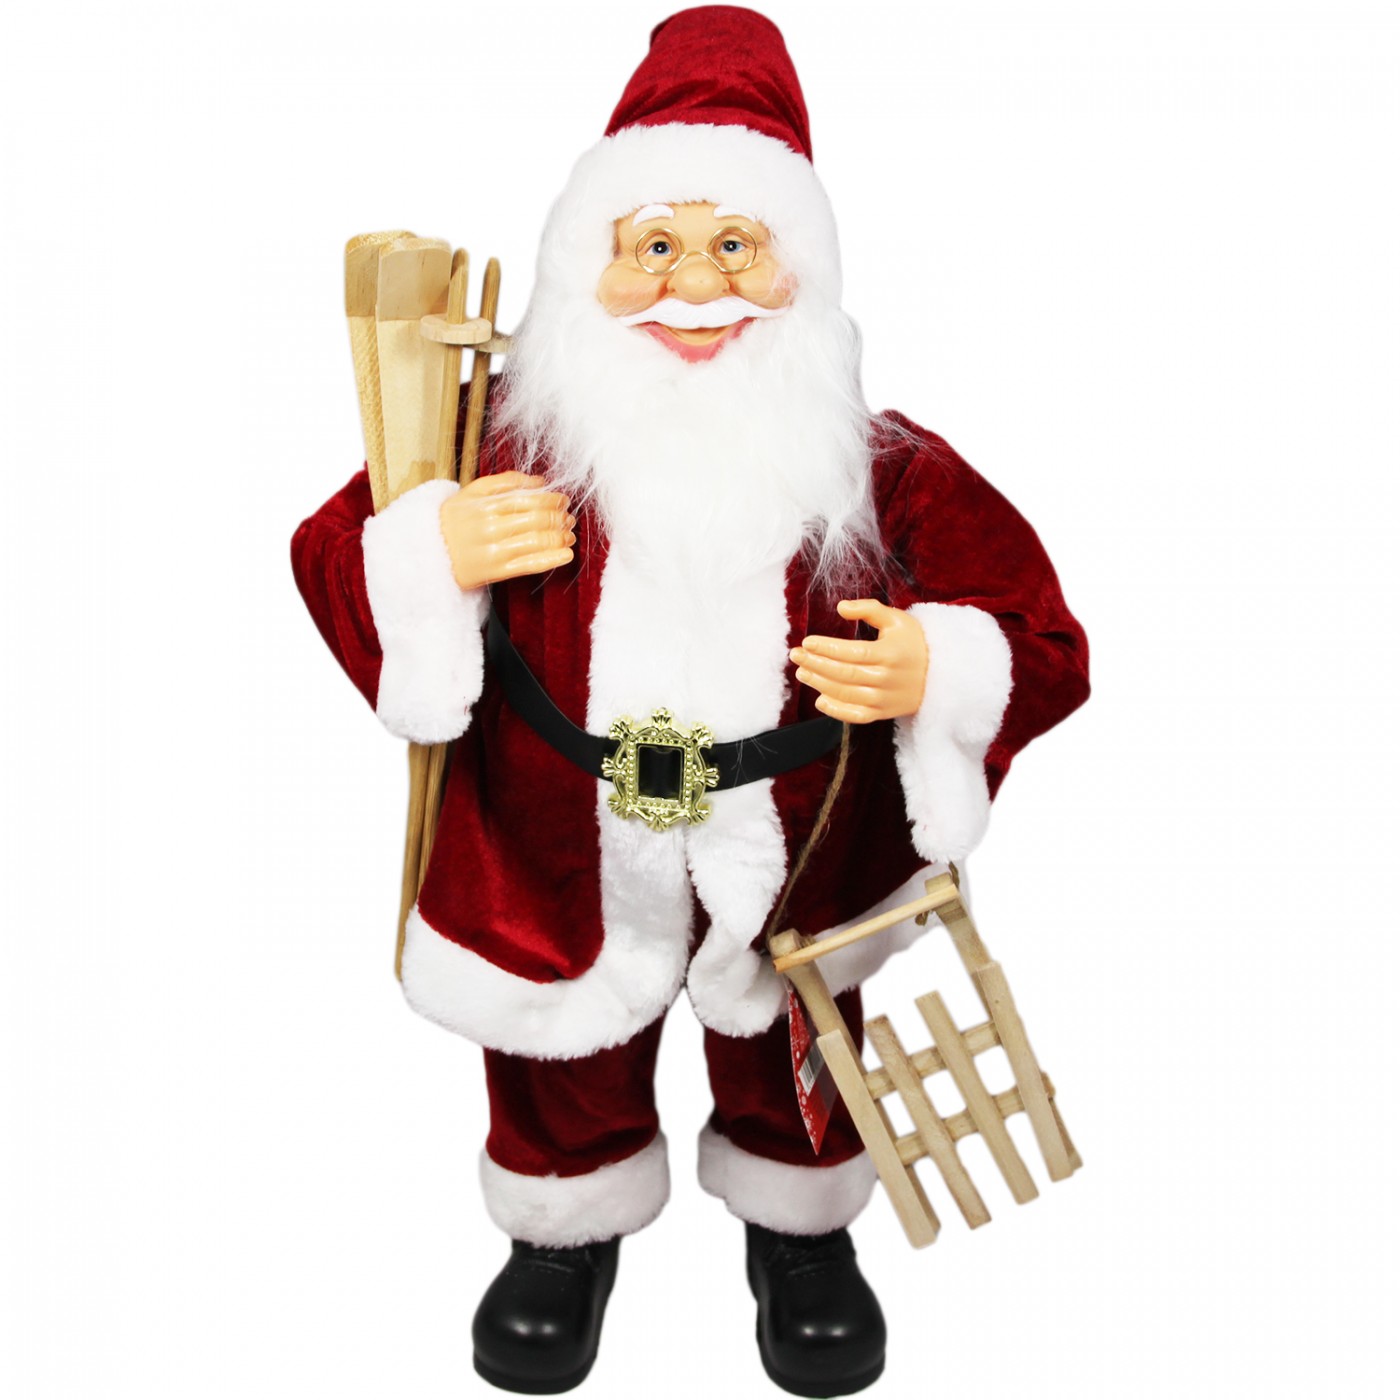 Figurka świąteczna dekoracyjna - Święty Mikołaj - 60 cm